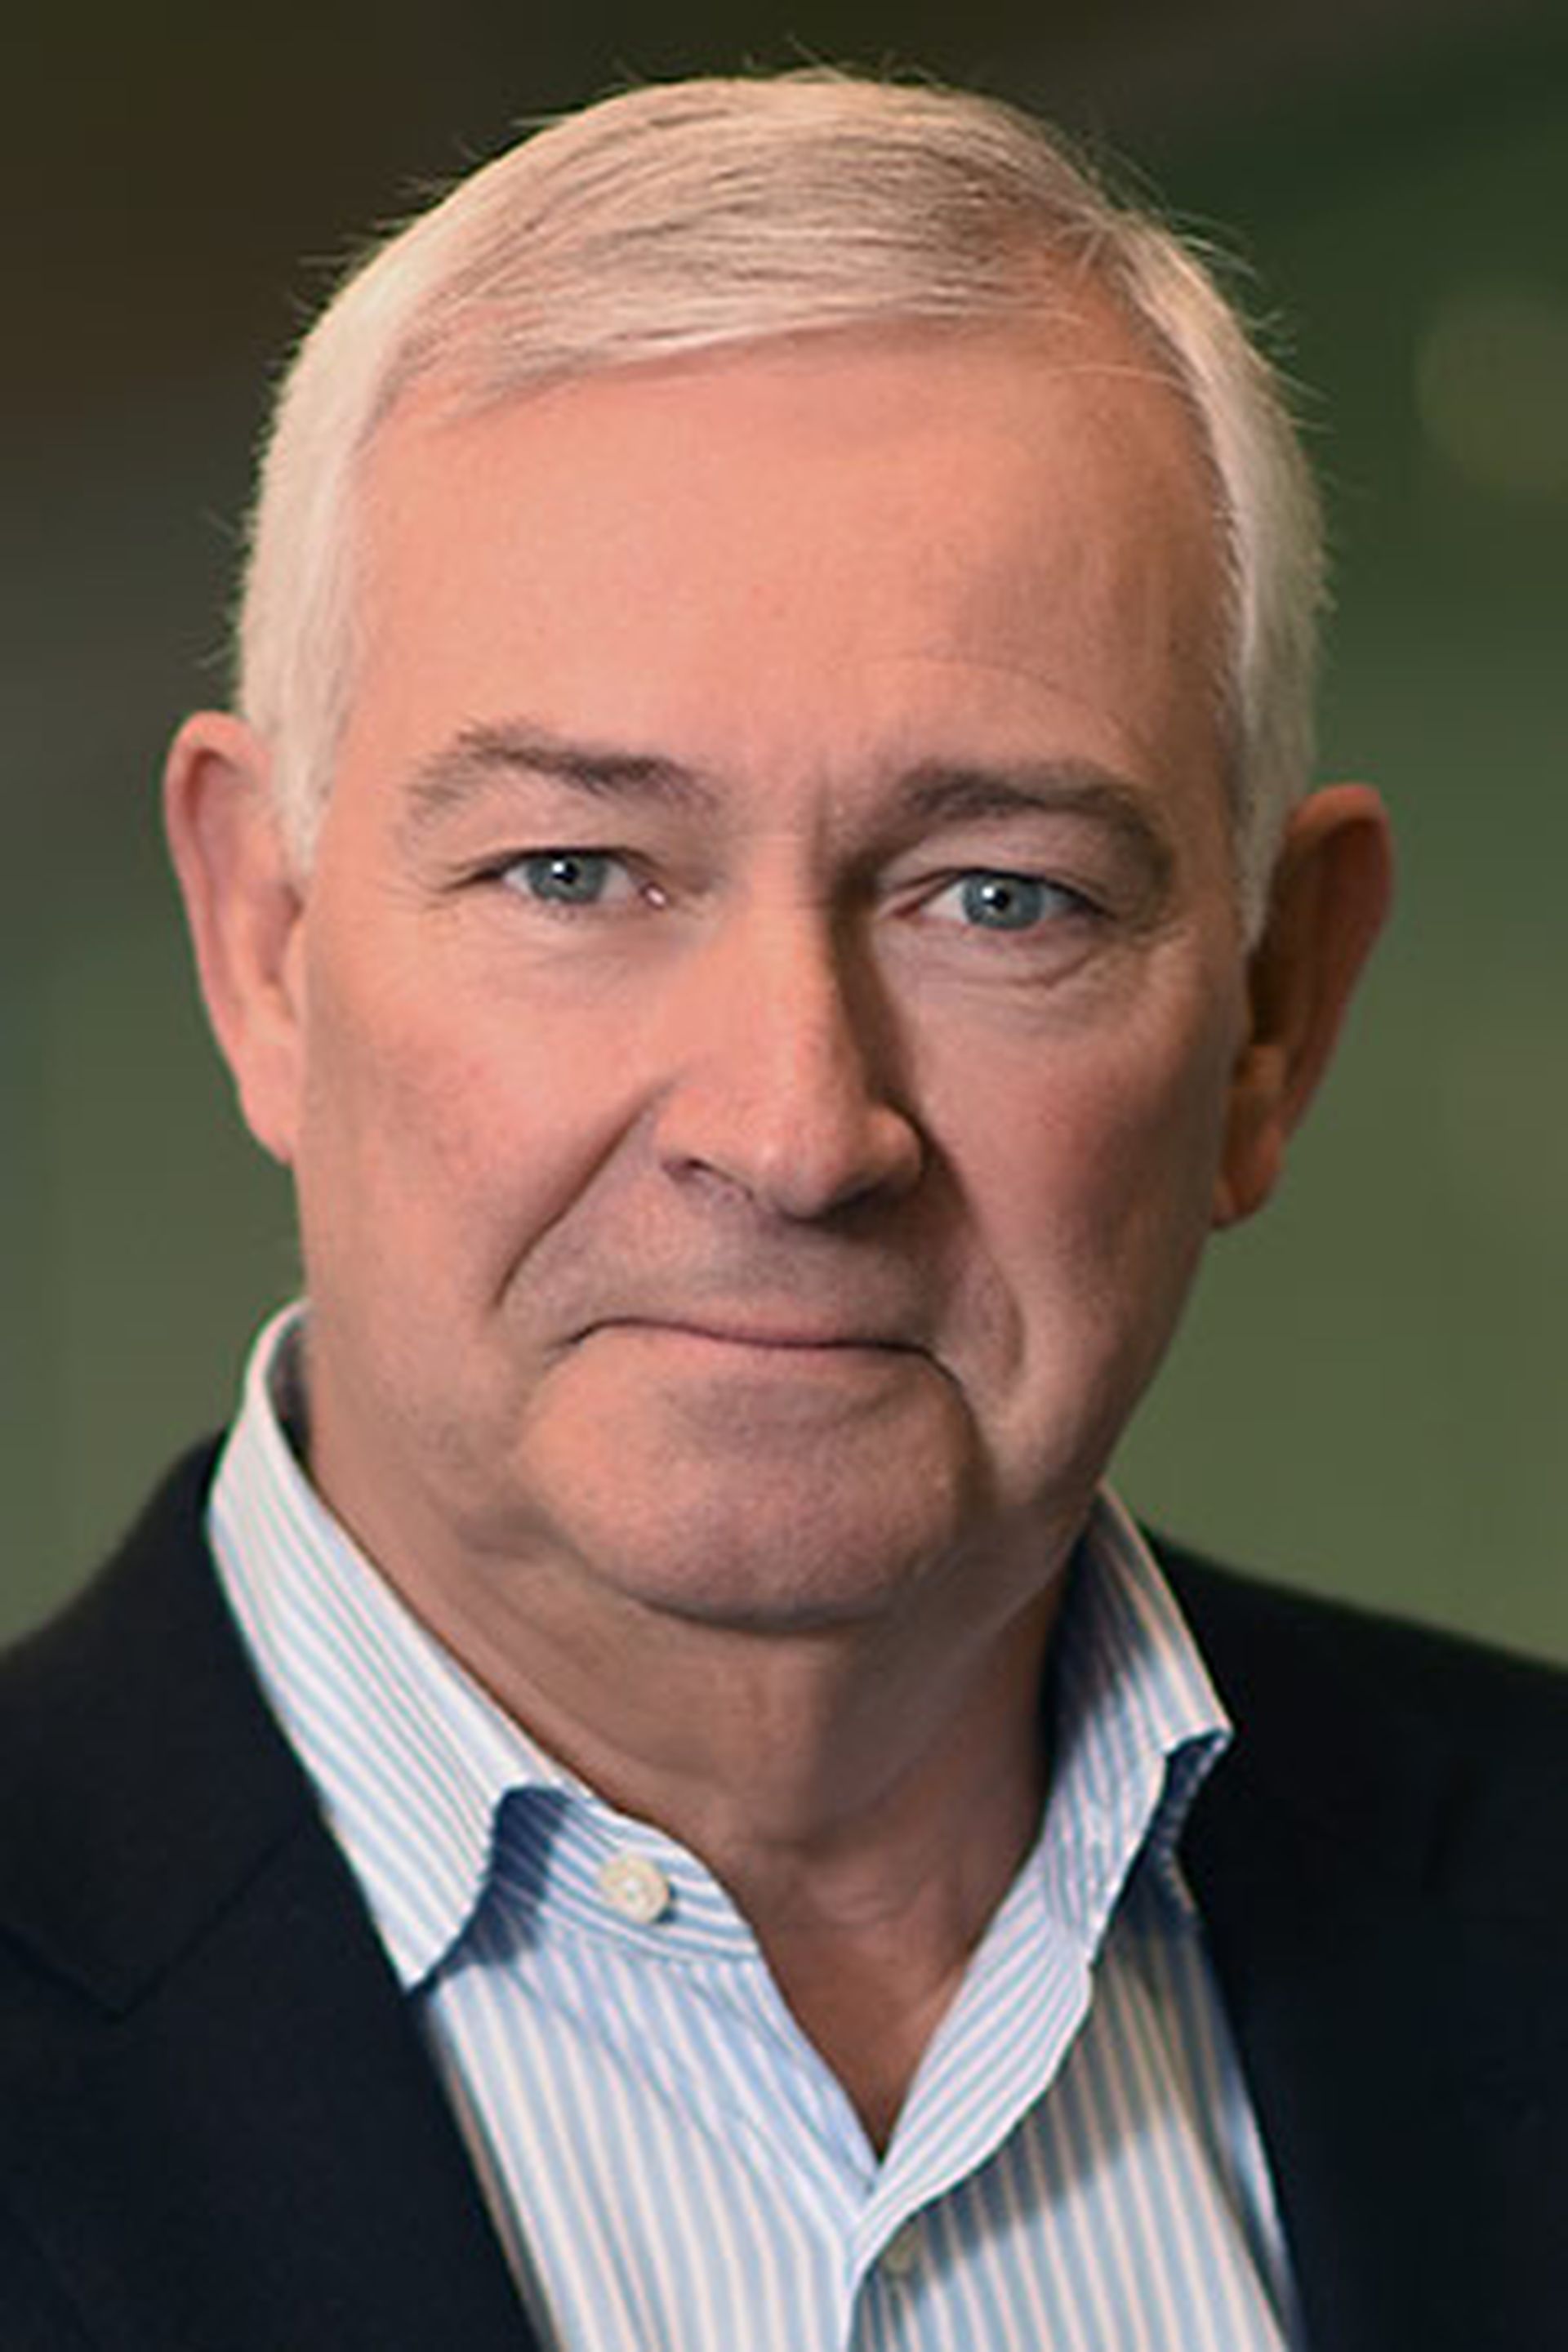 Ingram Micro CEO Alain Monié